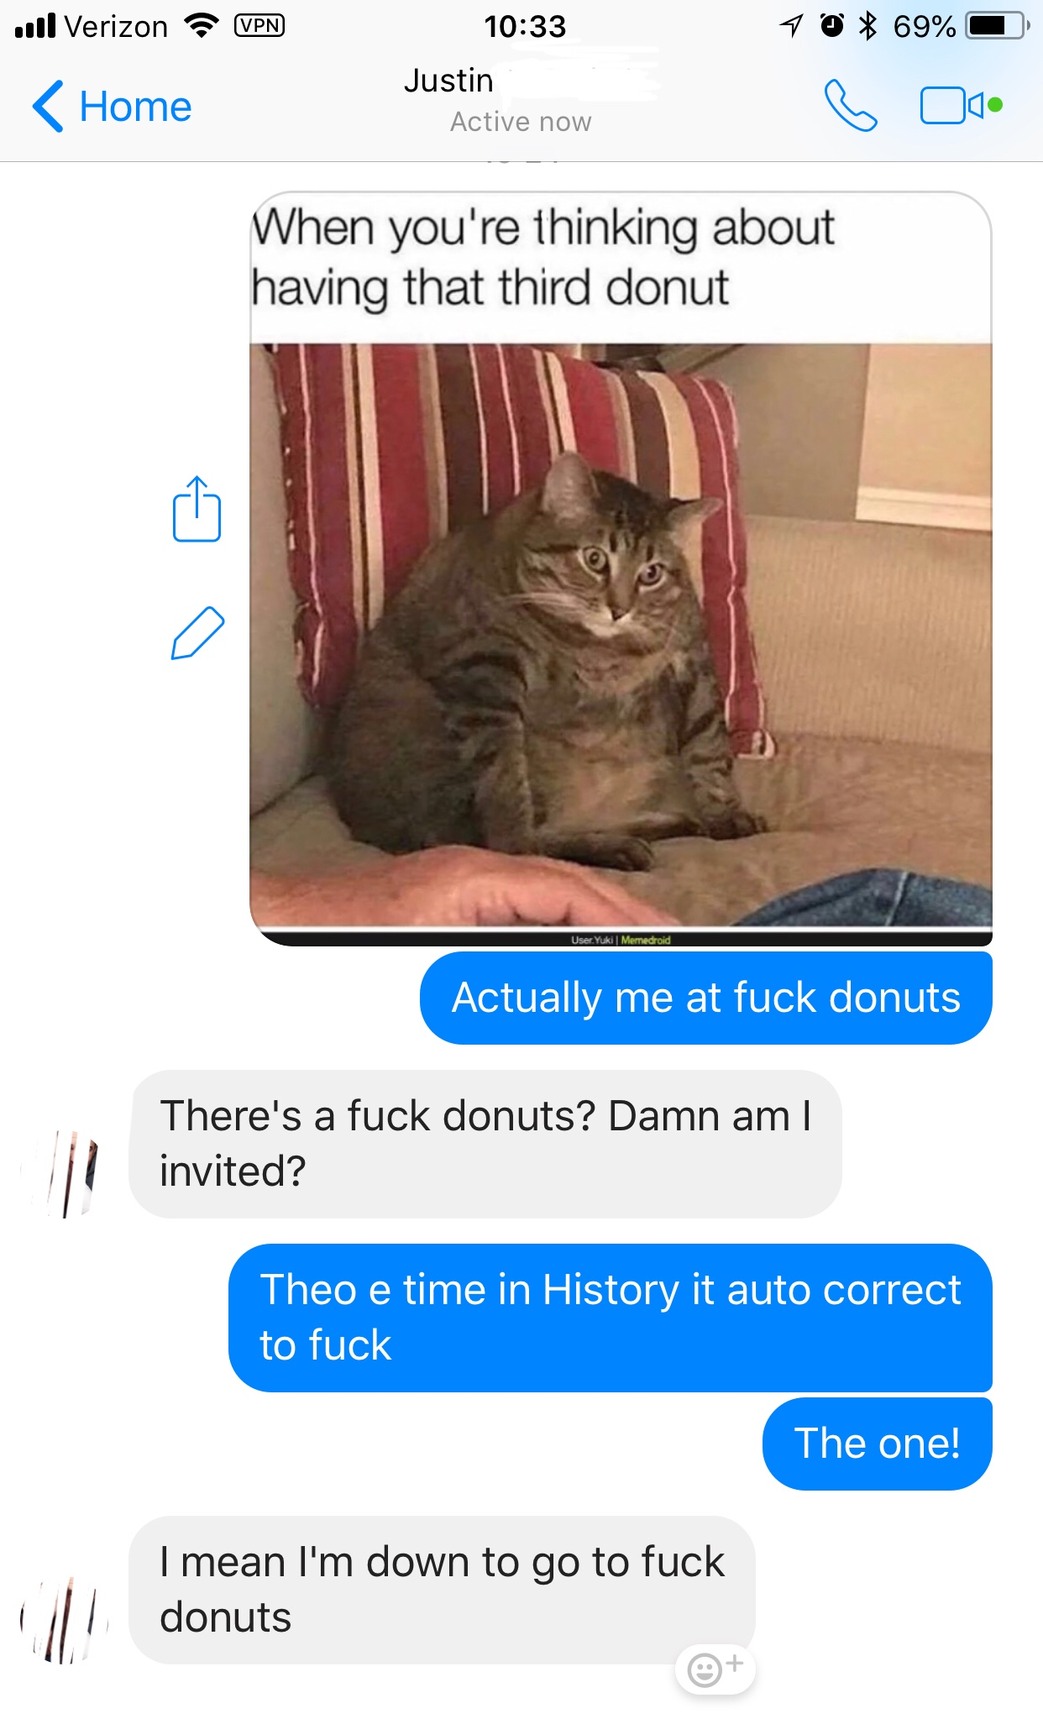 Title is donut - meme